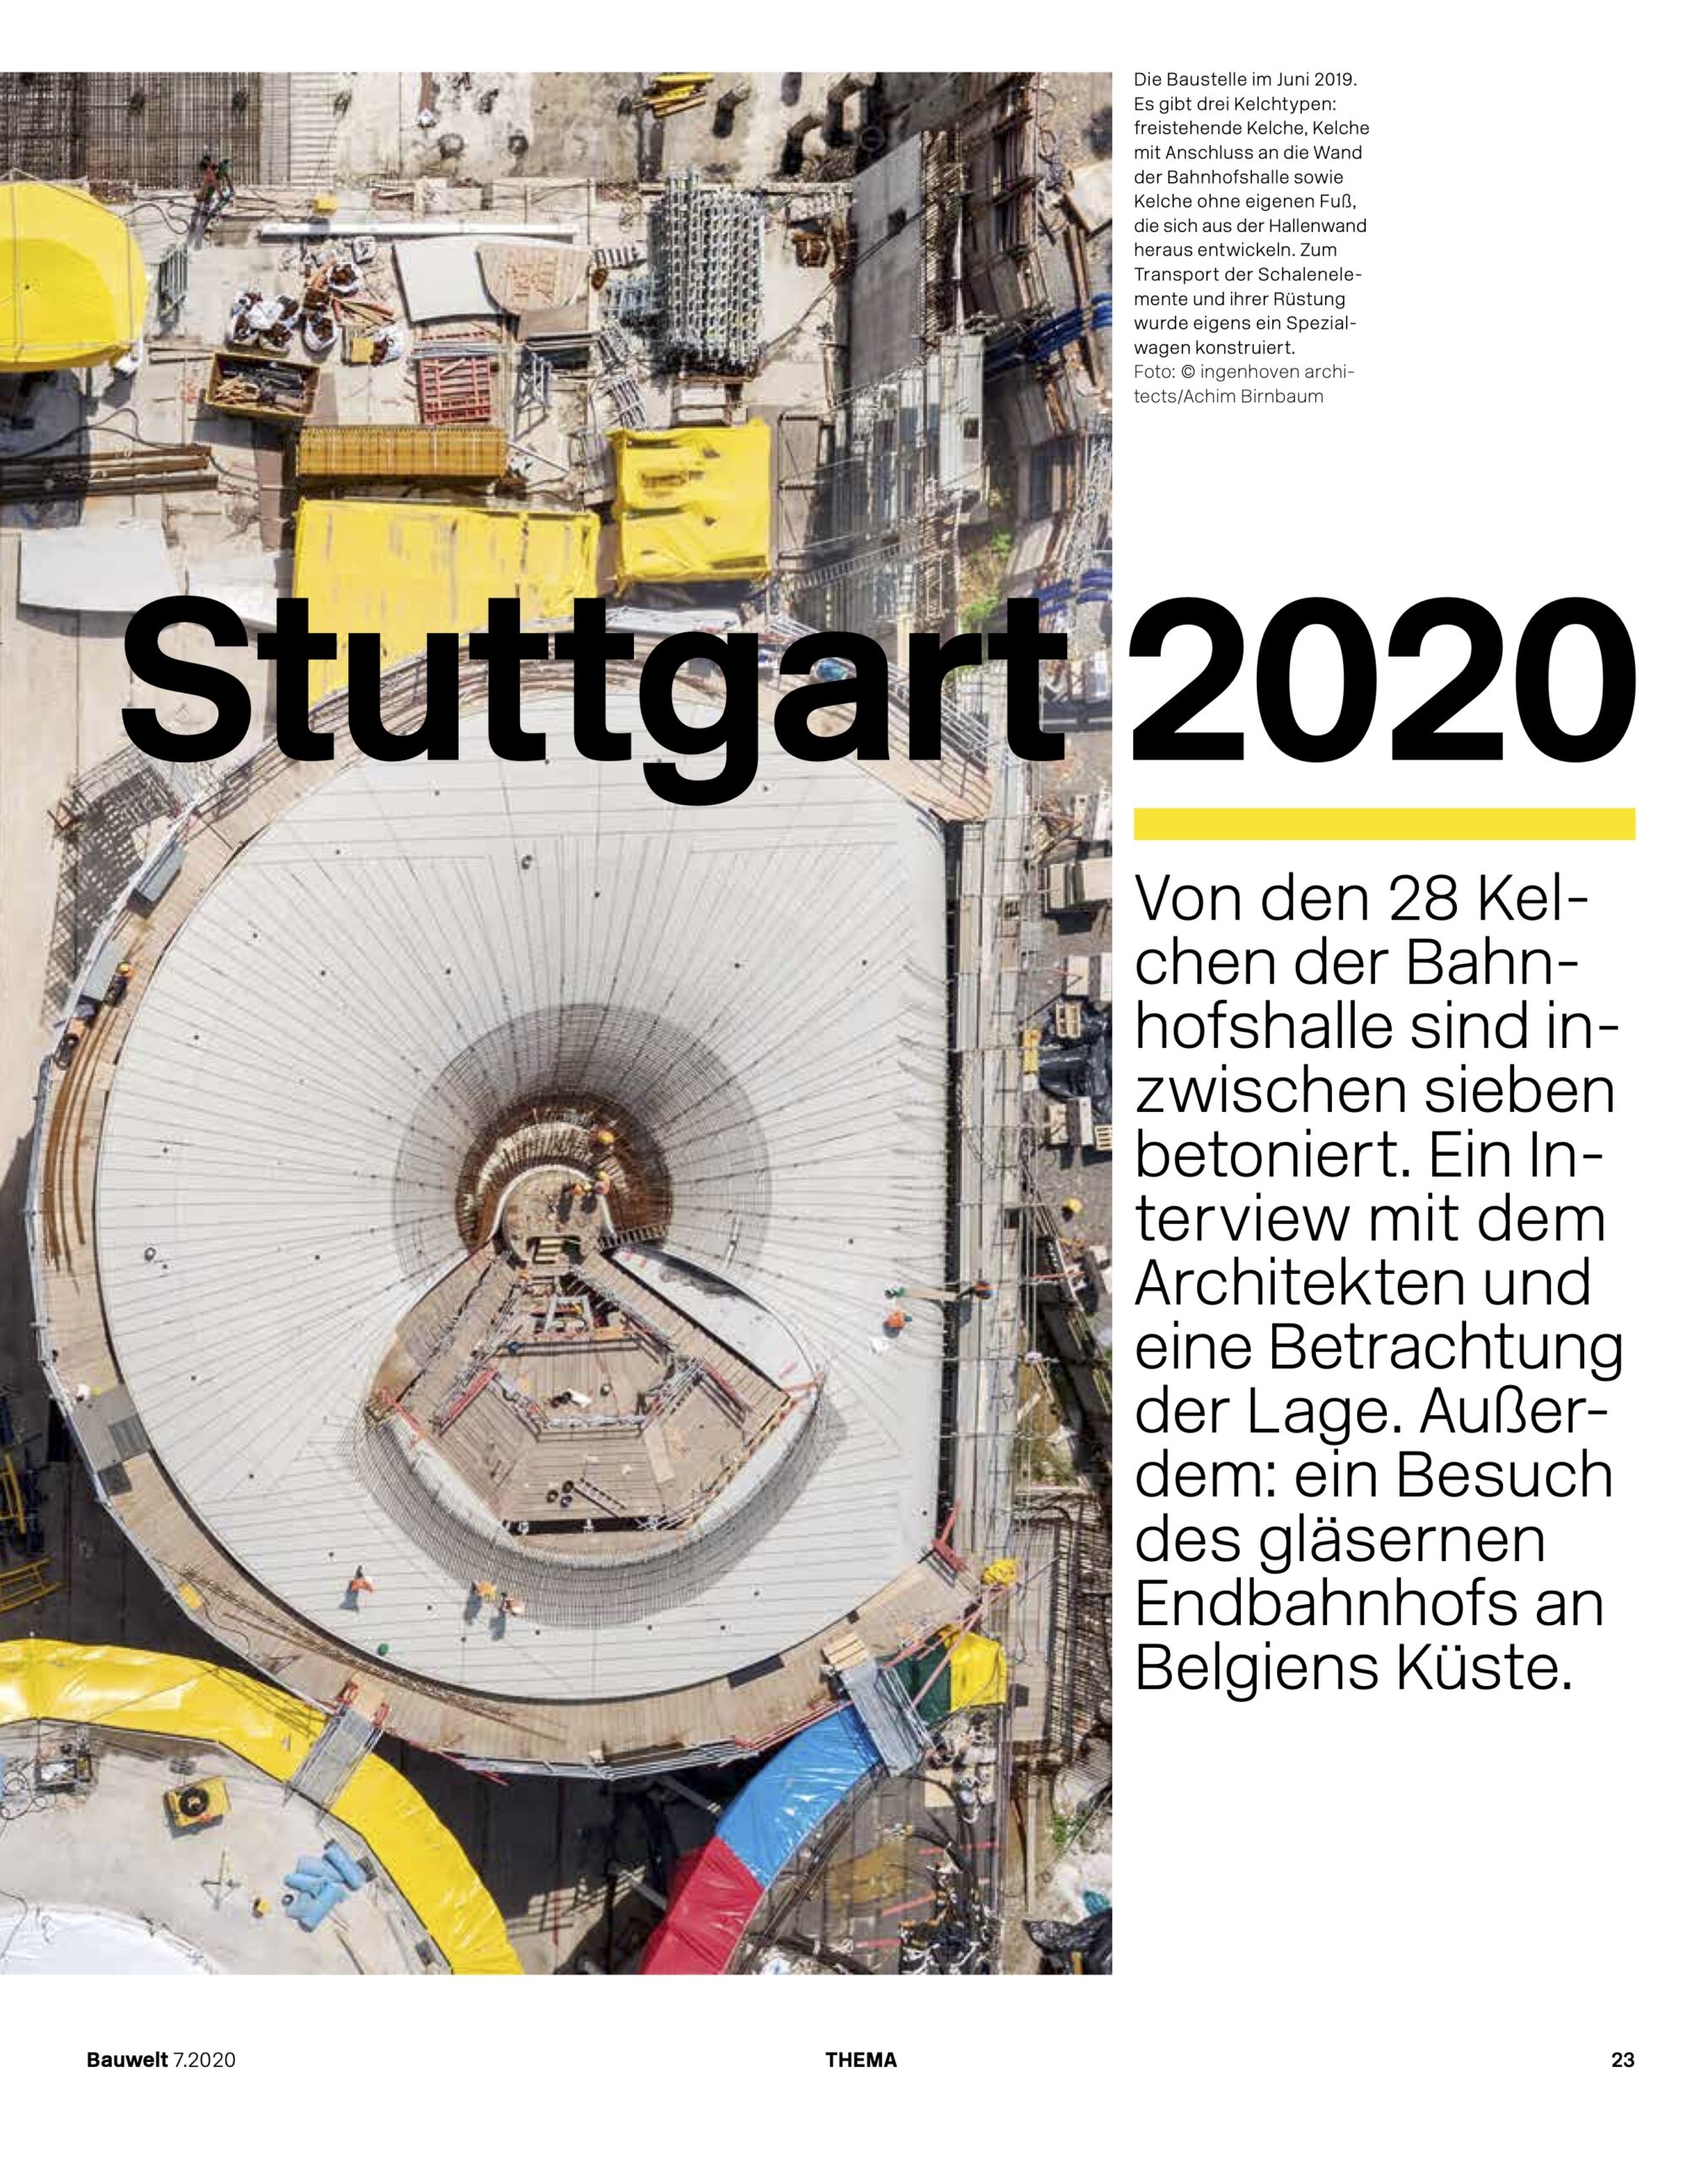 Bauwelt Magazin über Stuttgart 2020 10 Jahre Stuttgart 21, Interview mit Christoph Ingenhoven